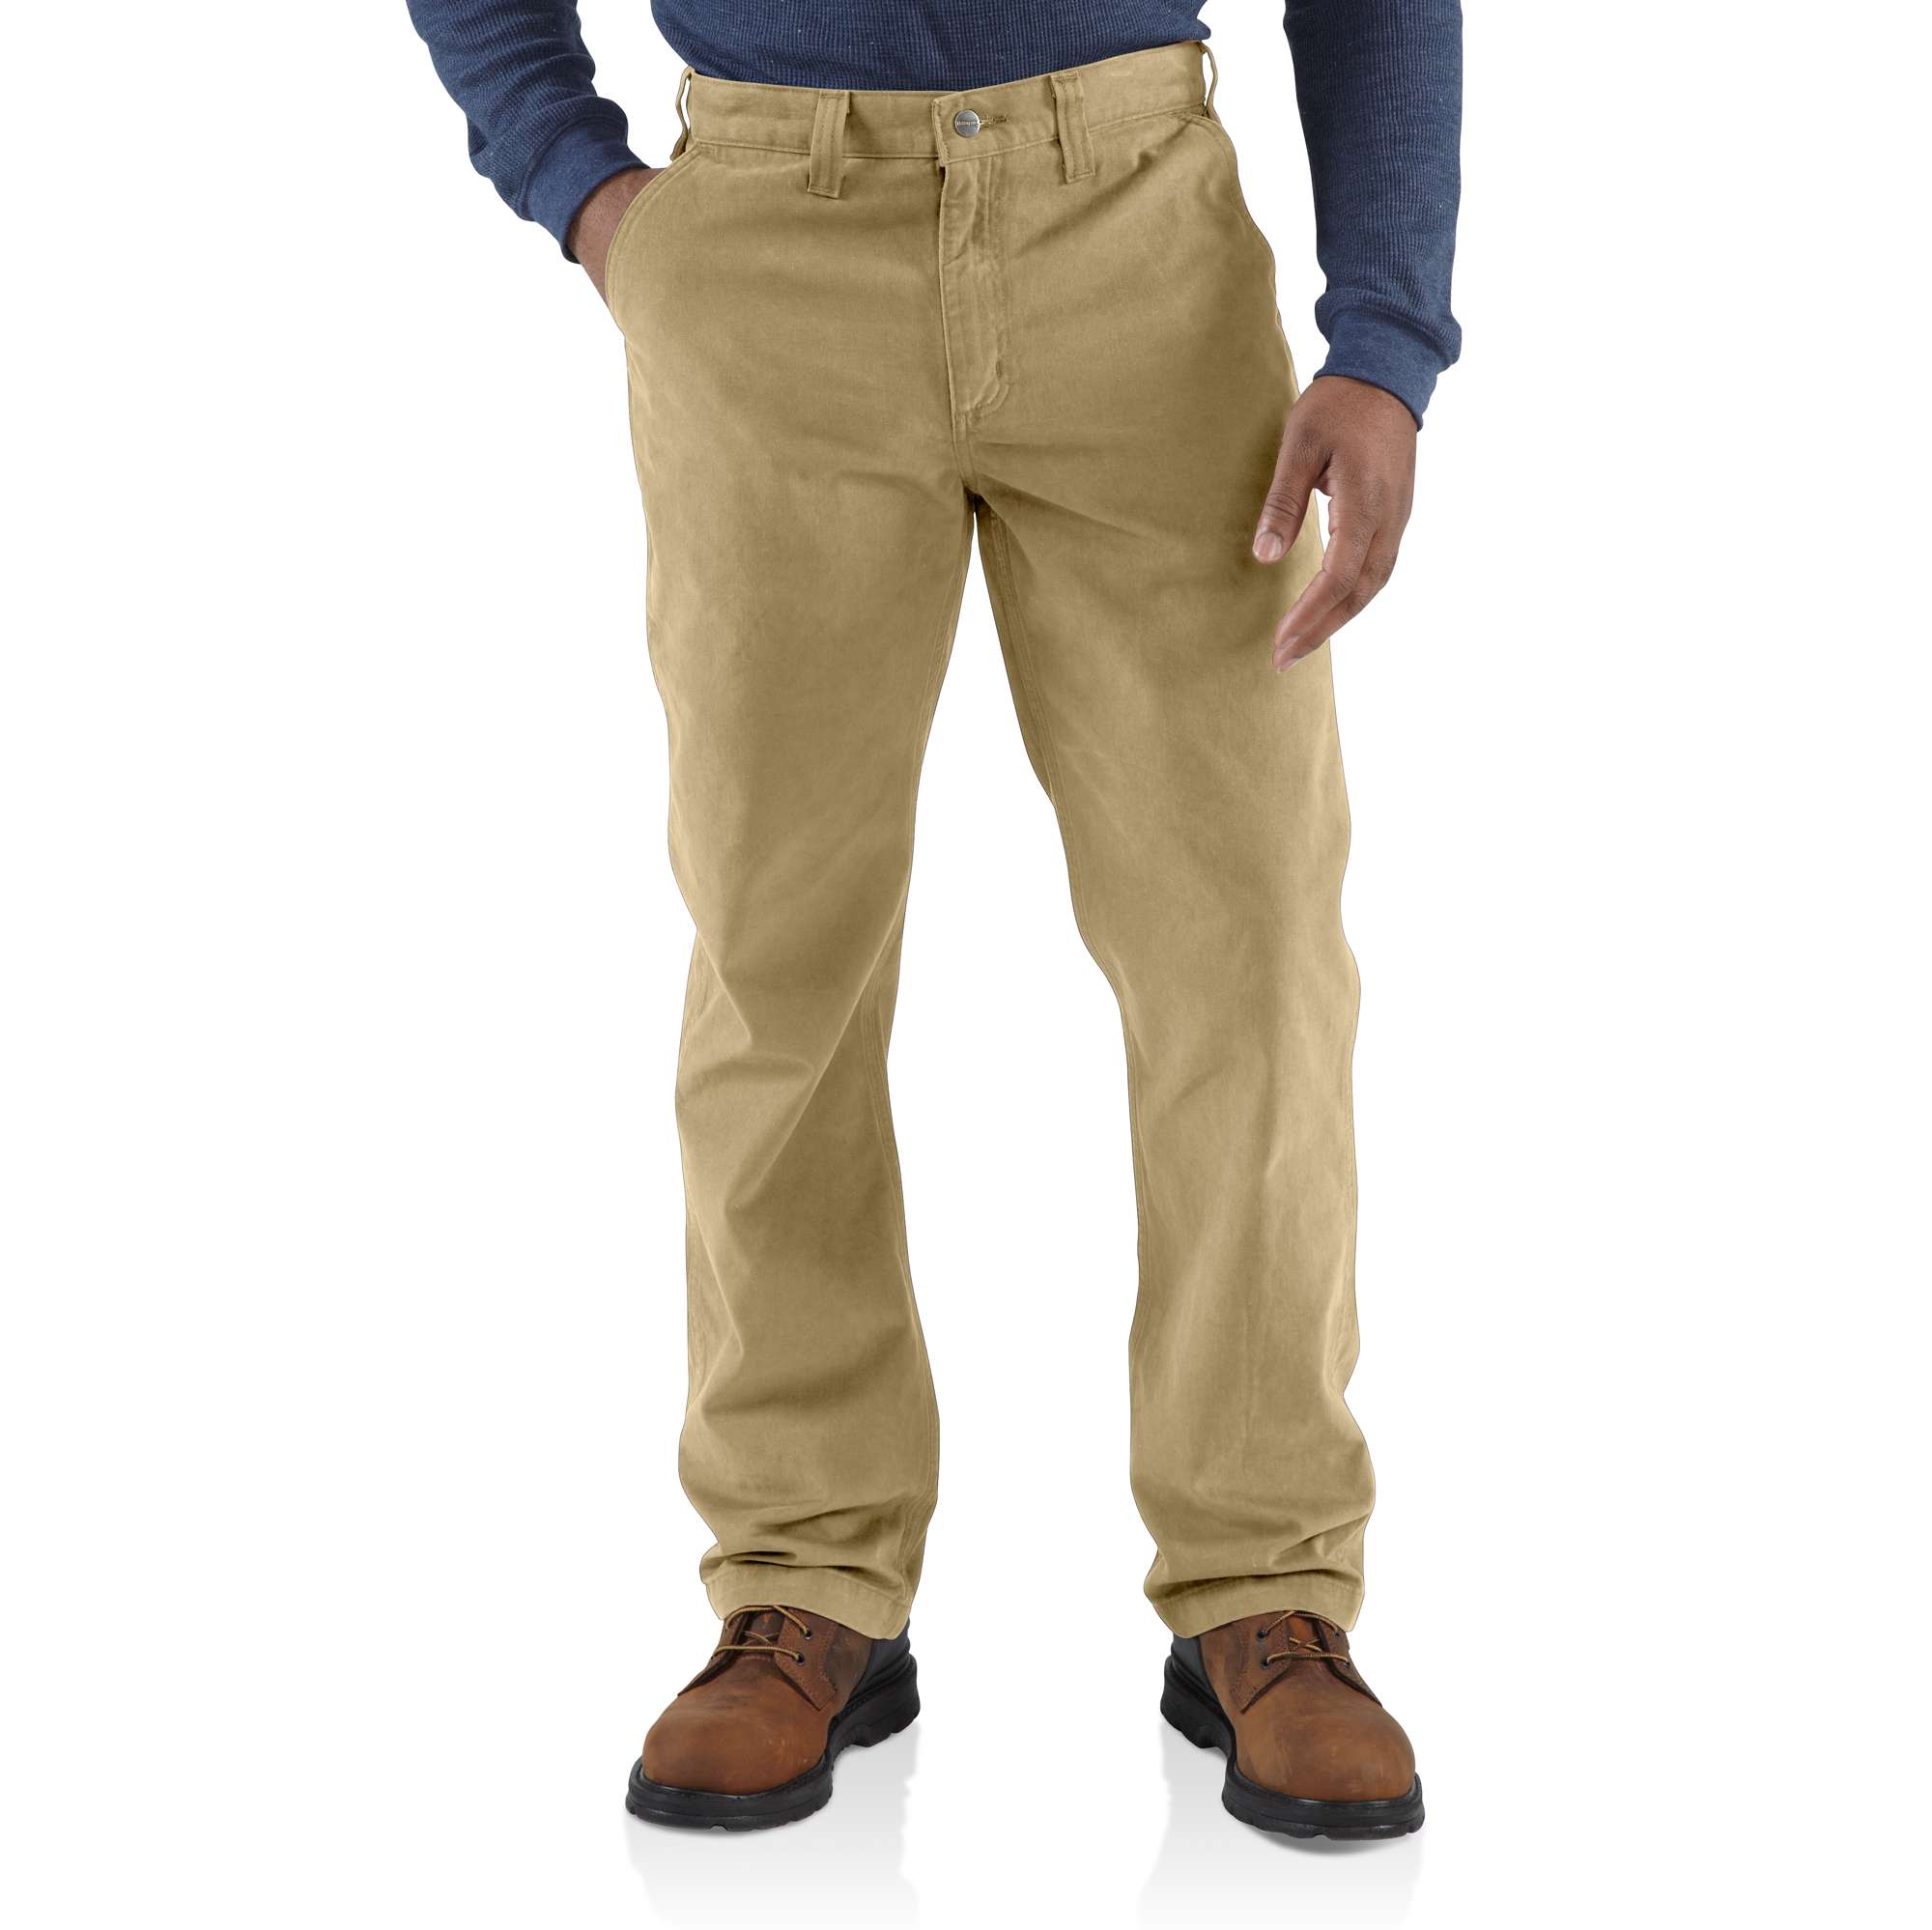 2018 Brand Casual Pants For Men Dress Pant Mid Full Slim